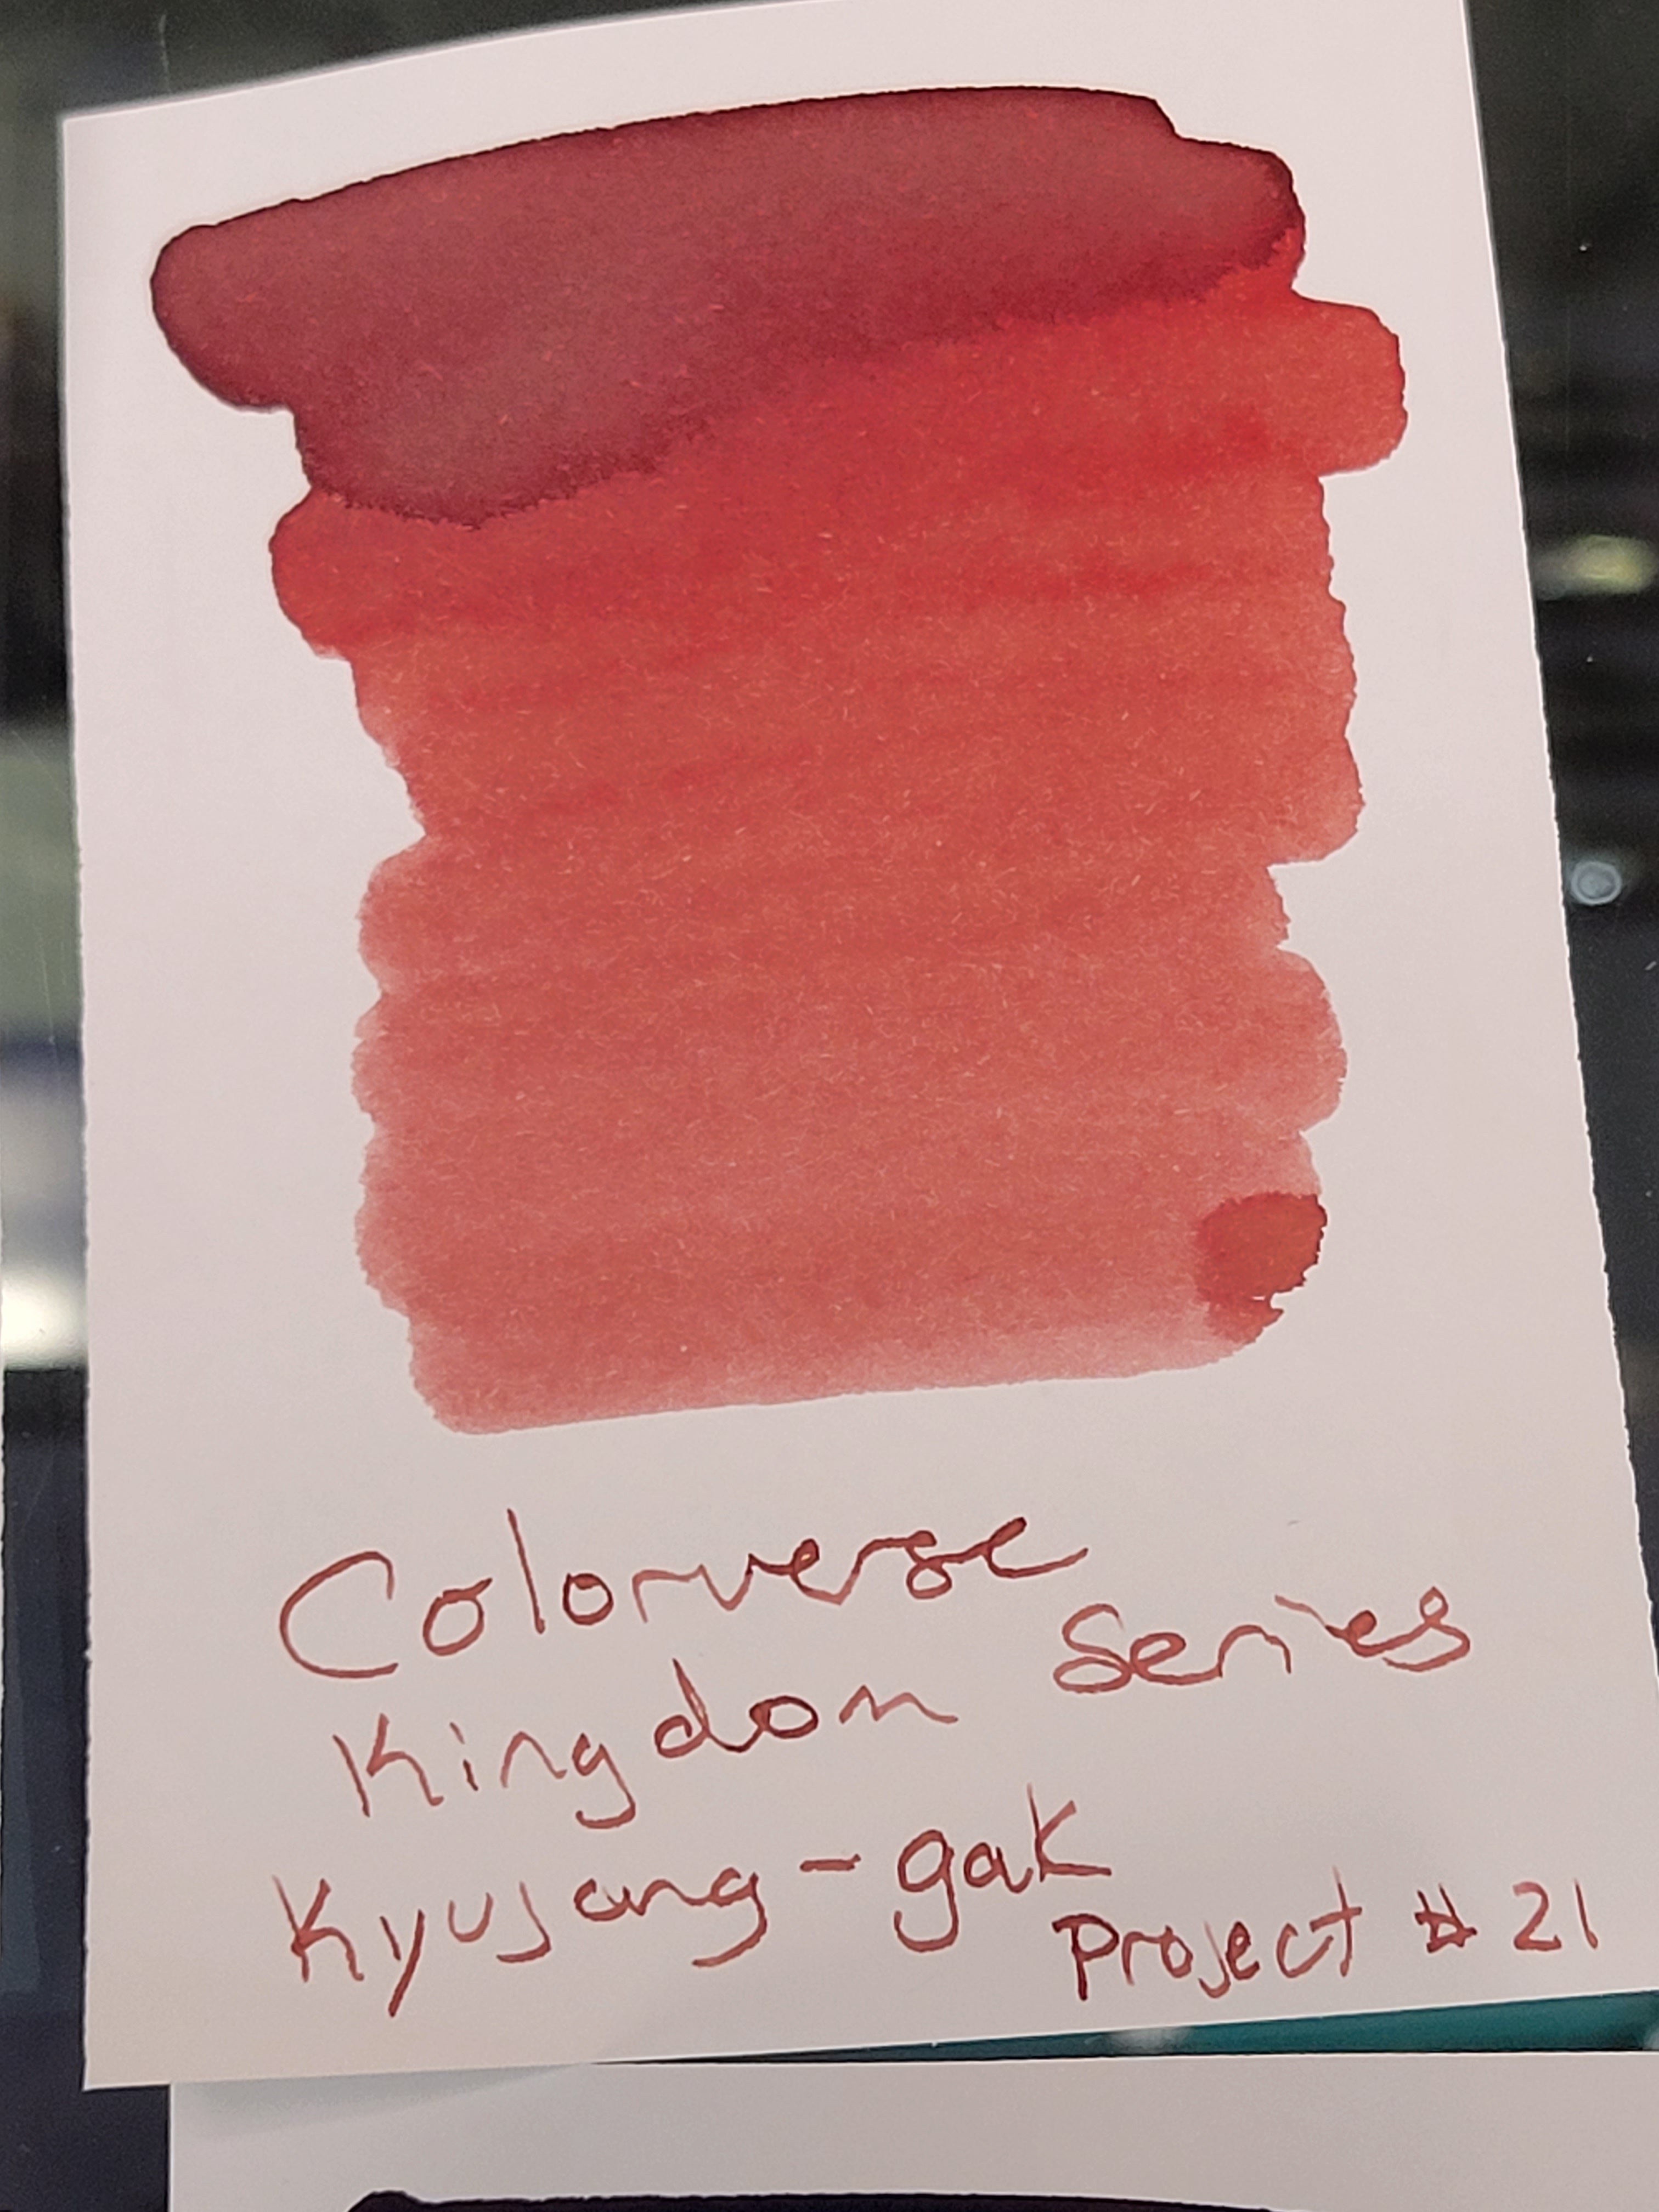 Colorverse Kingdom Ink - Project No. 21 - 30ml-Pen Boutique Ltd